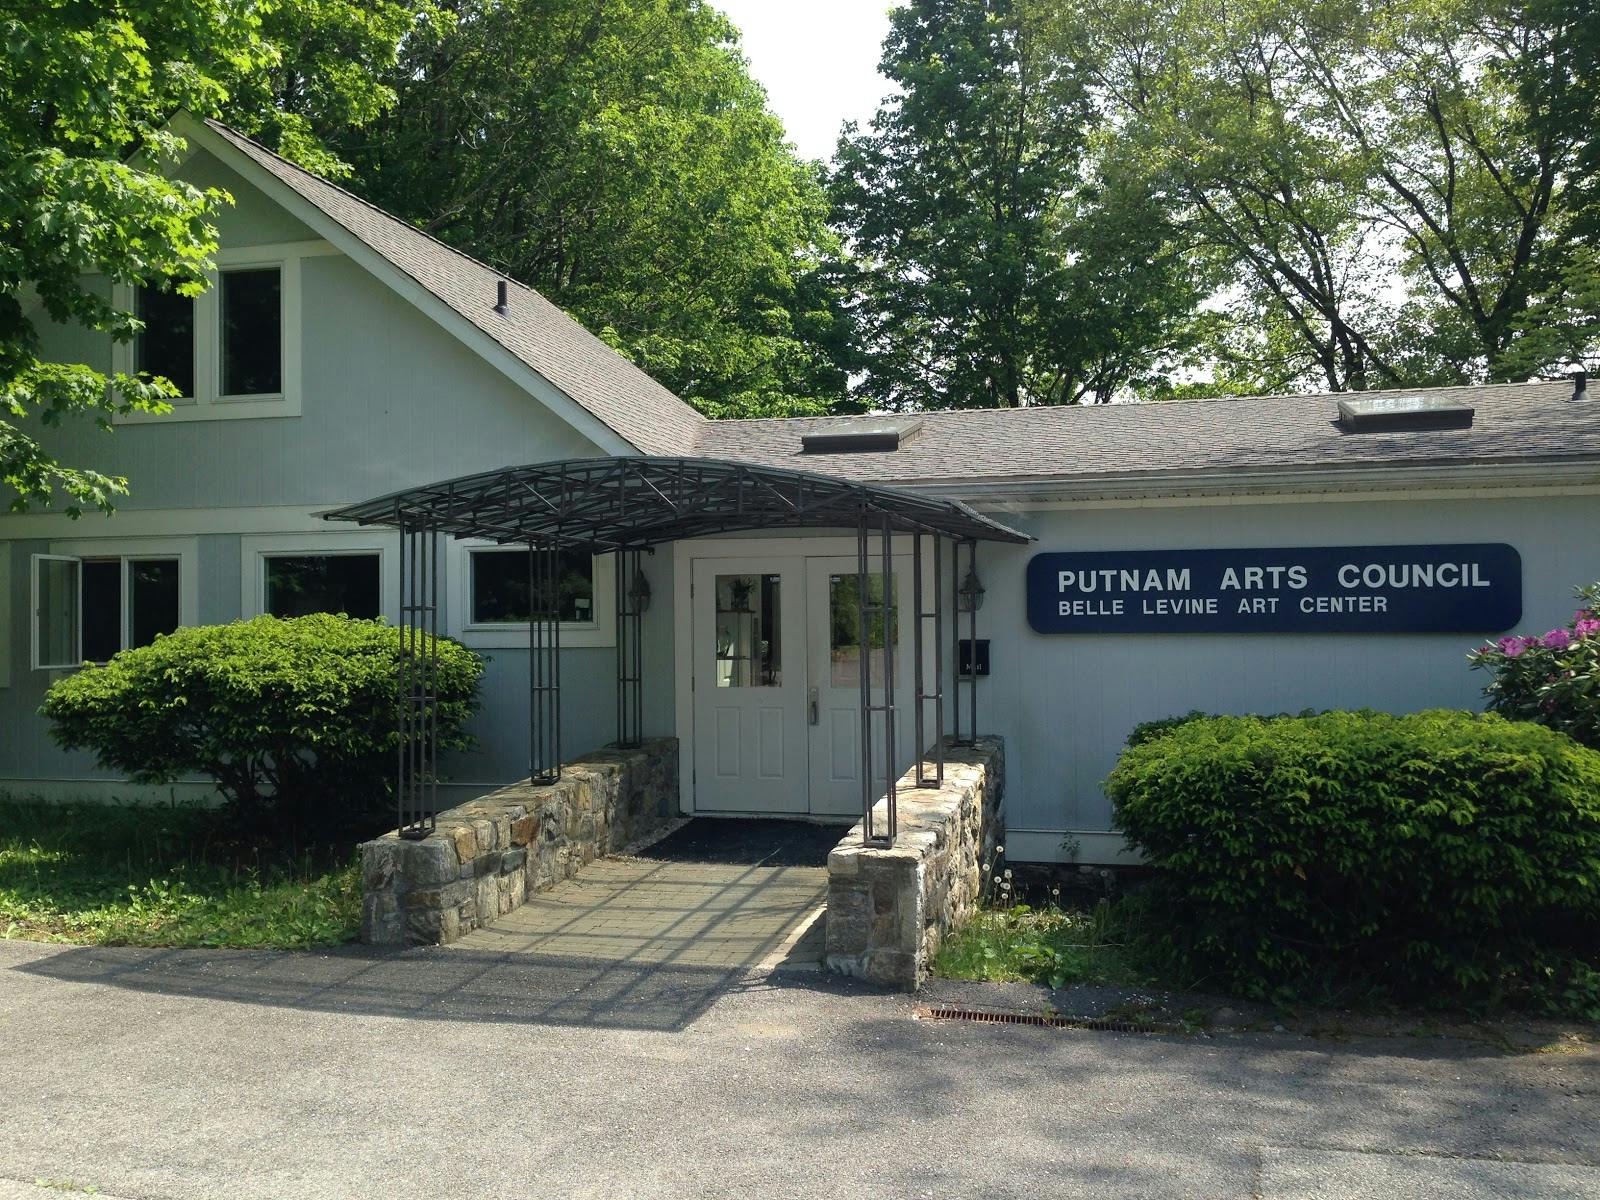 Image - Putnam Arts Council